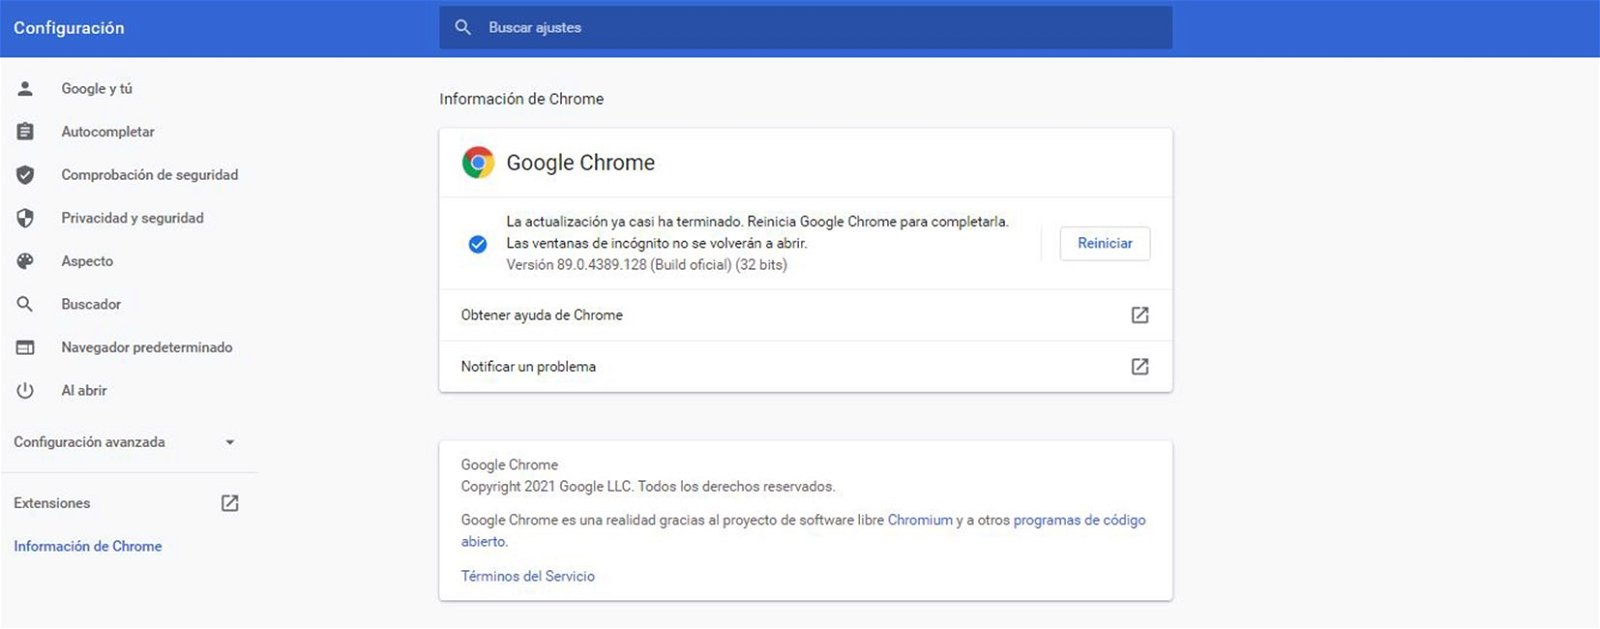 Google Chrome se ha quedado sin memoria: esta es la solución